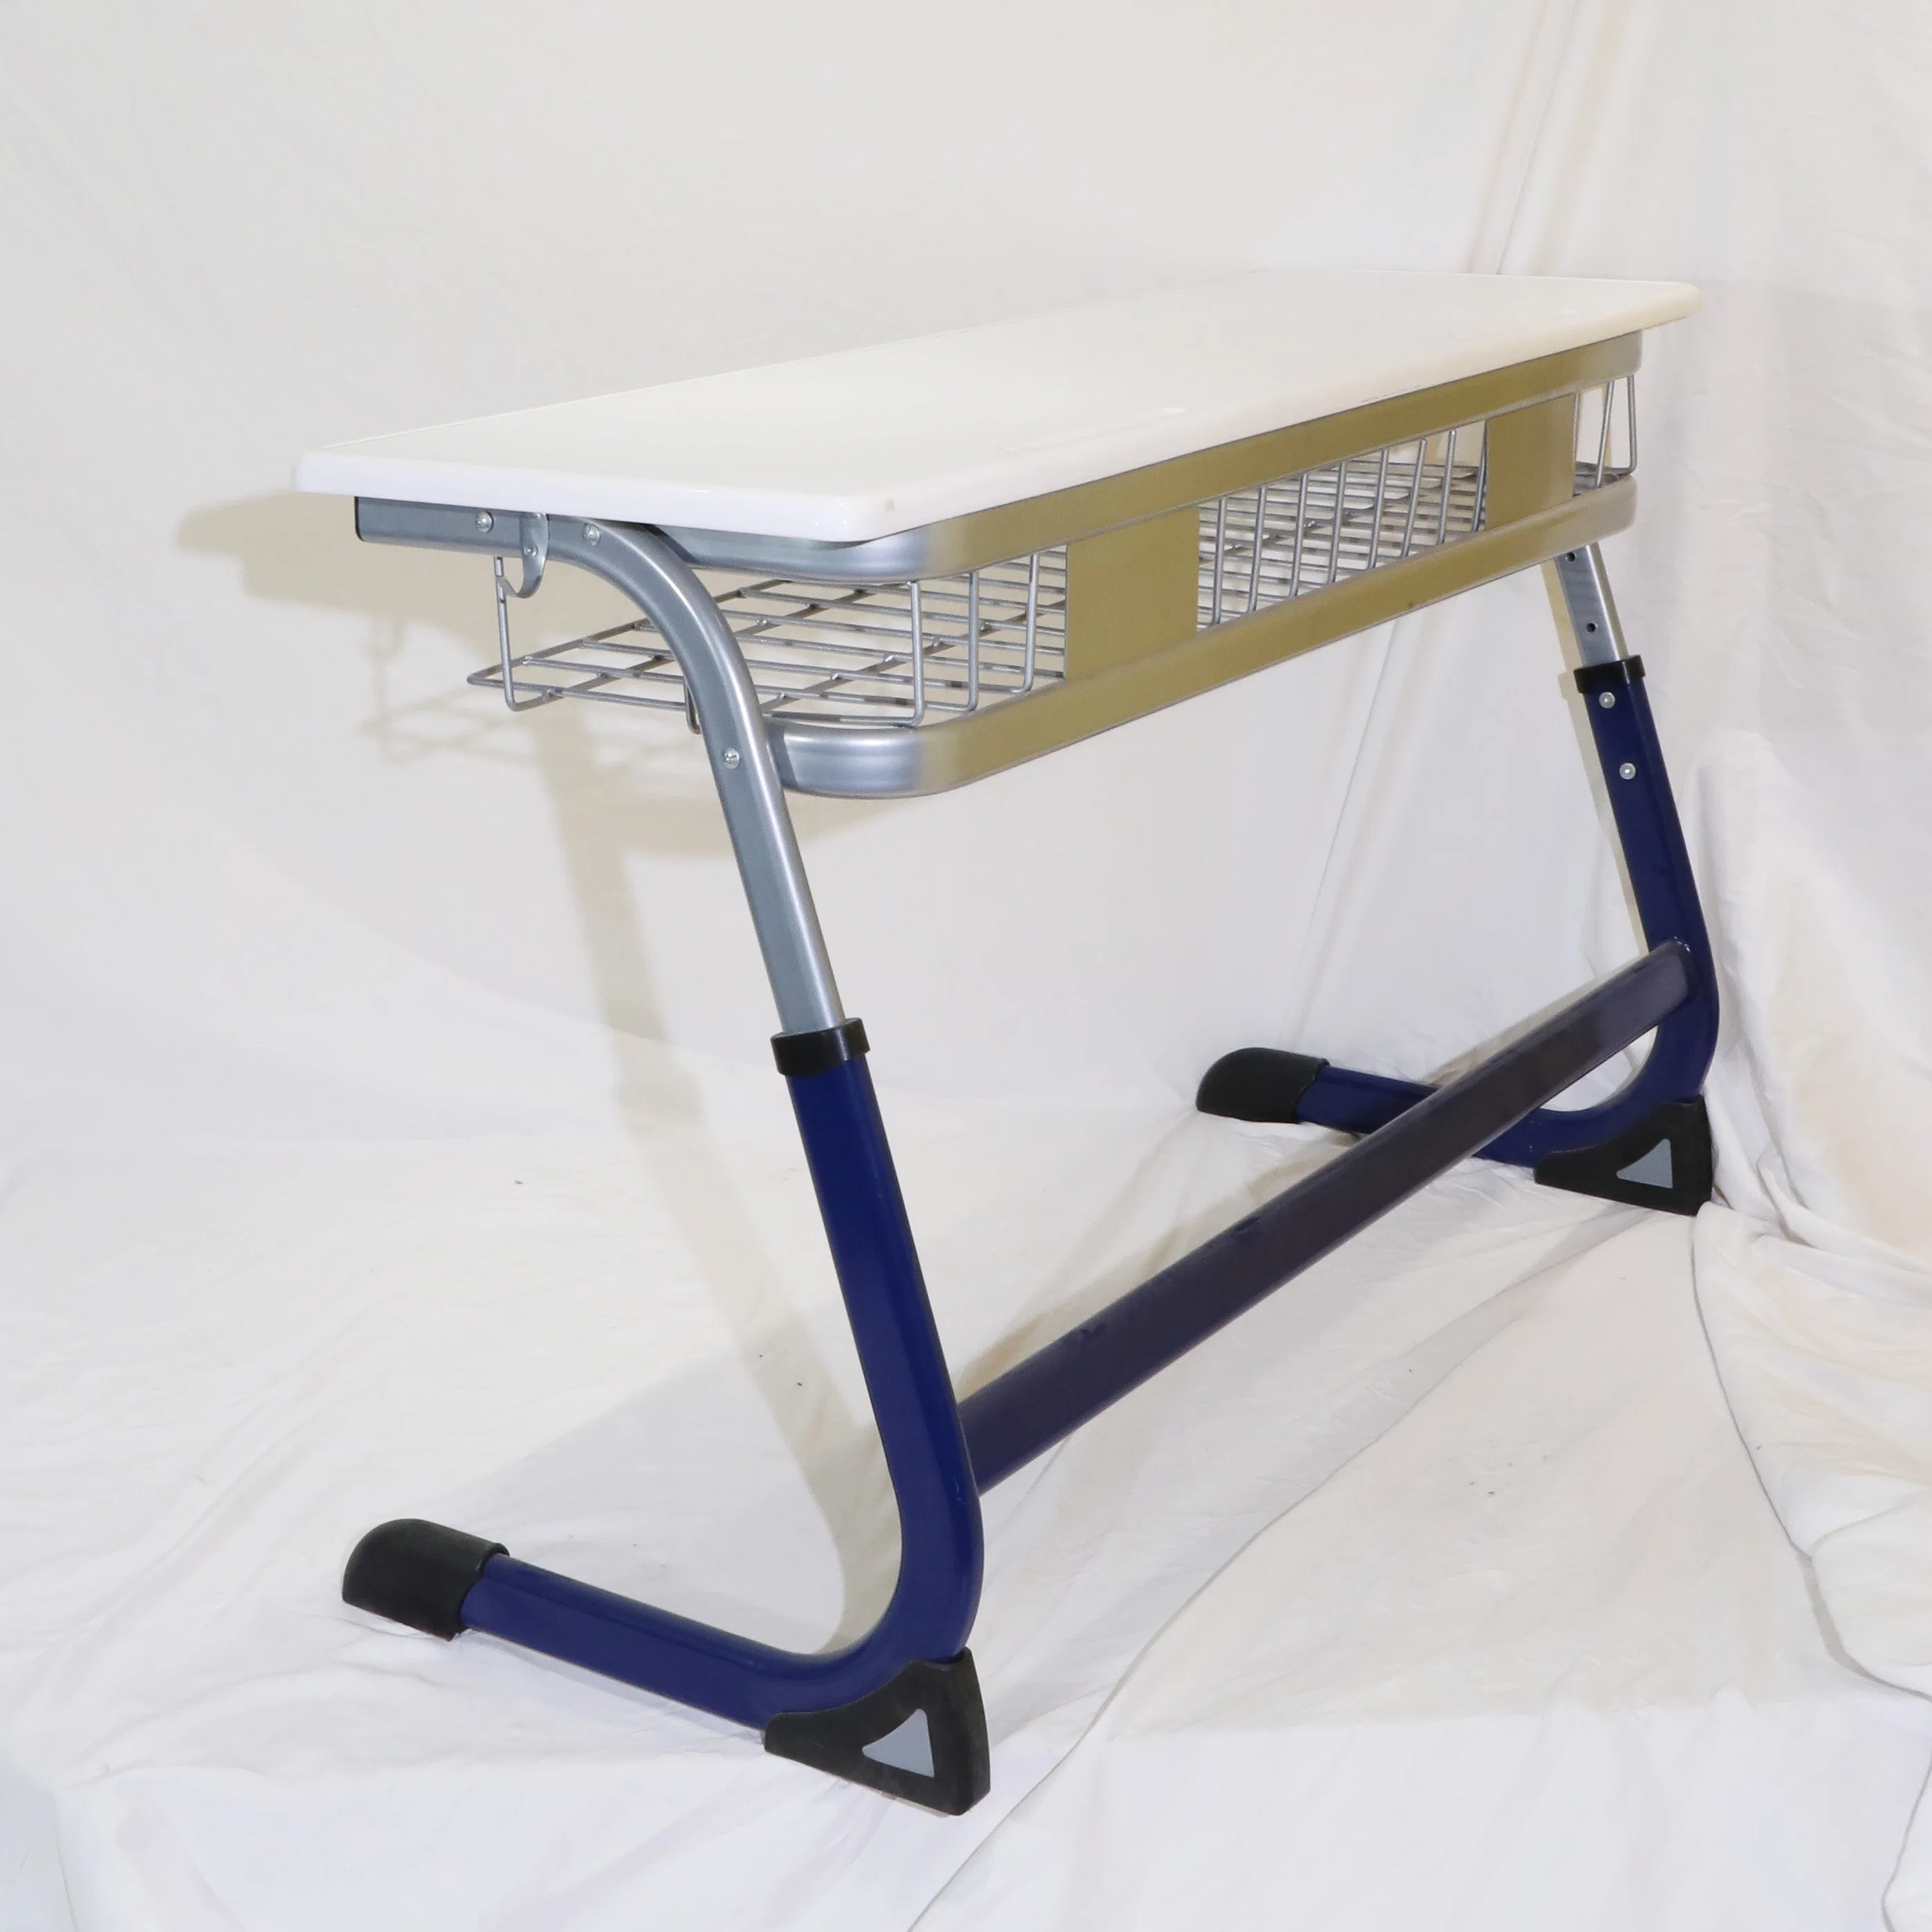 Los proveedores de mobiliario escolar Zoifun el doble de uso de los estudiantes Aula juego de mesas y sillas